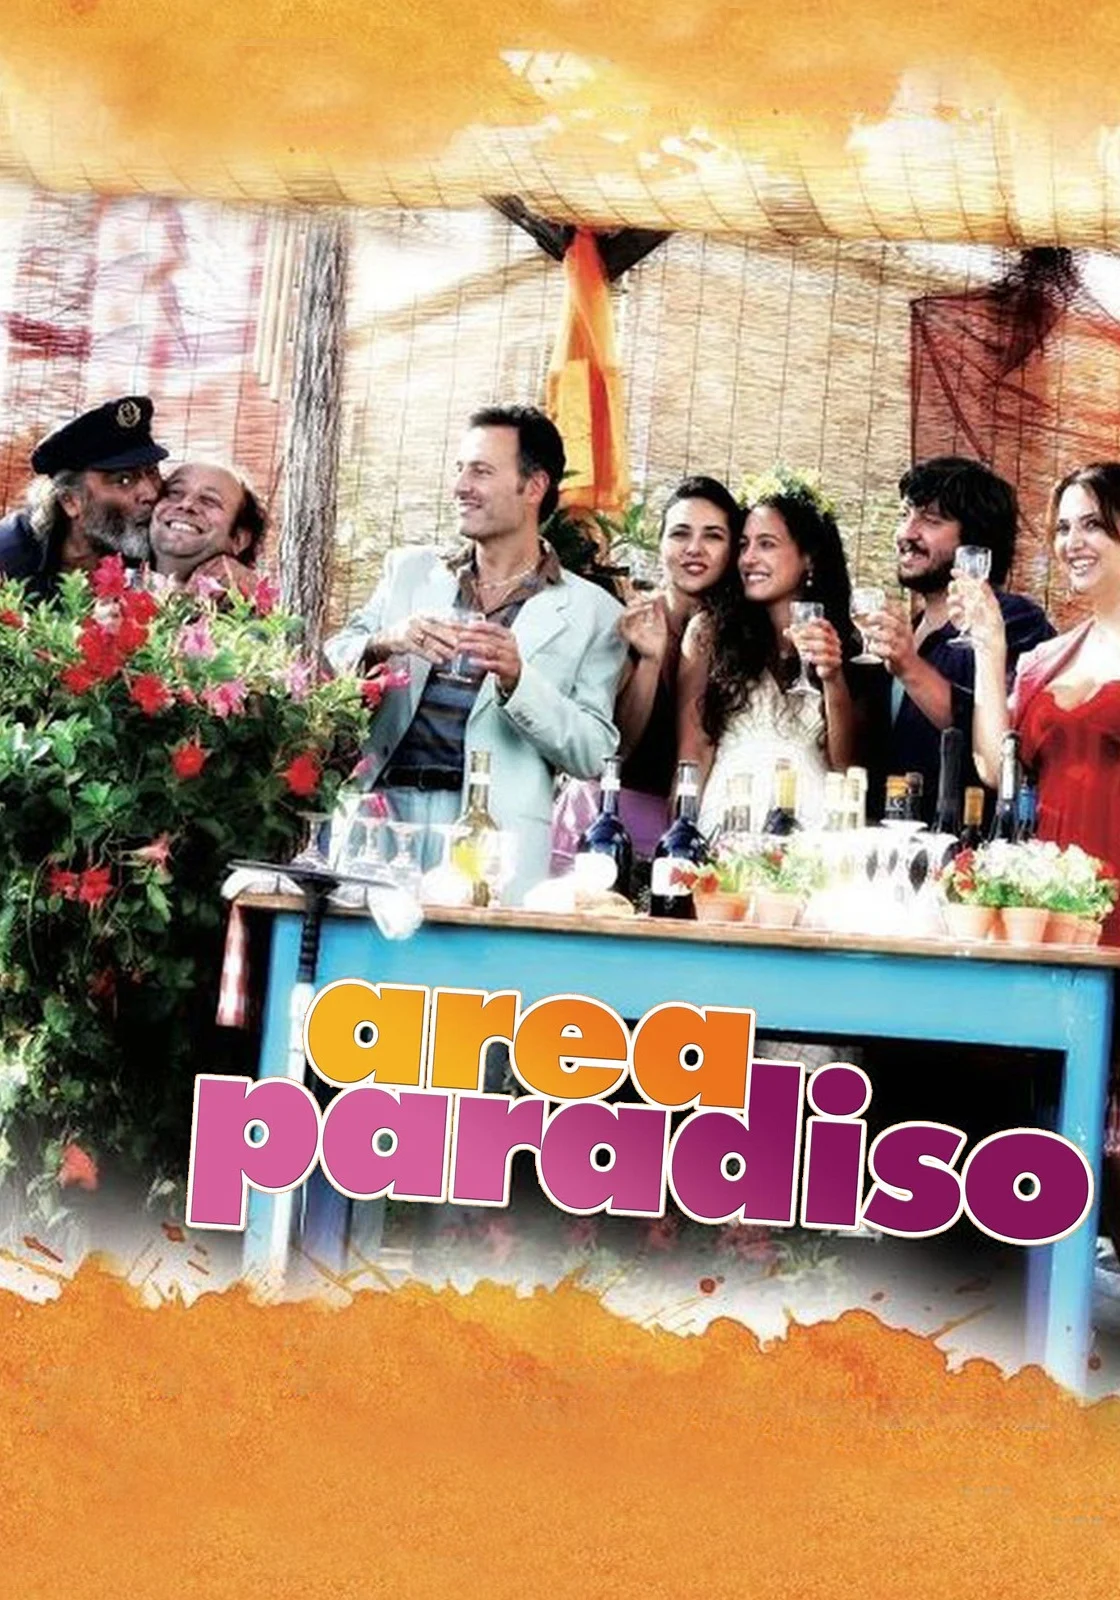 Area Paradiso (2011)